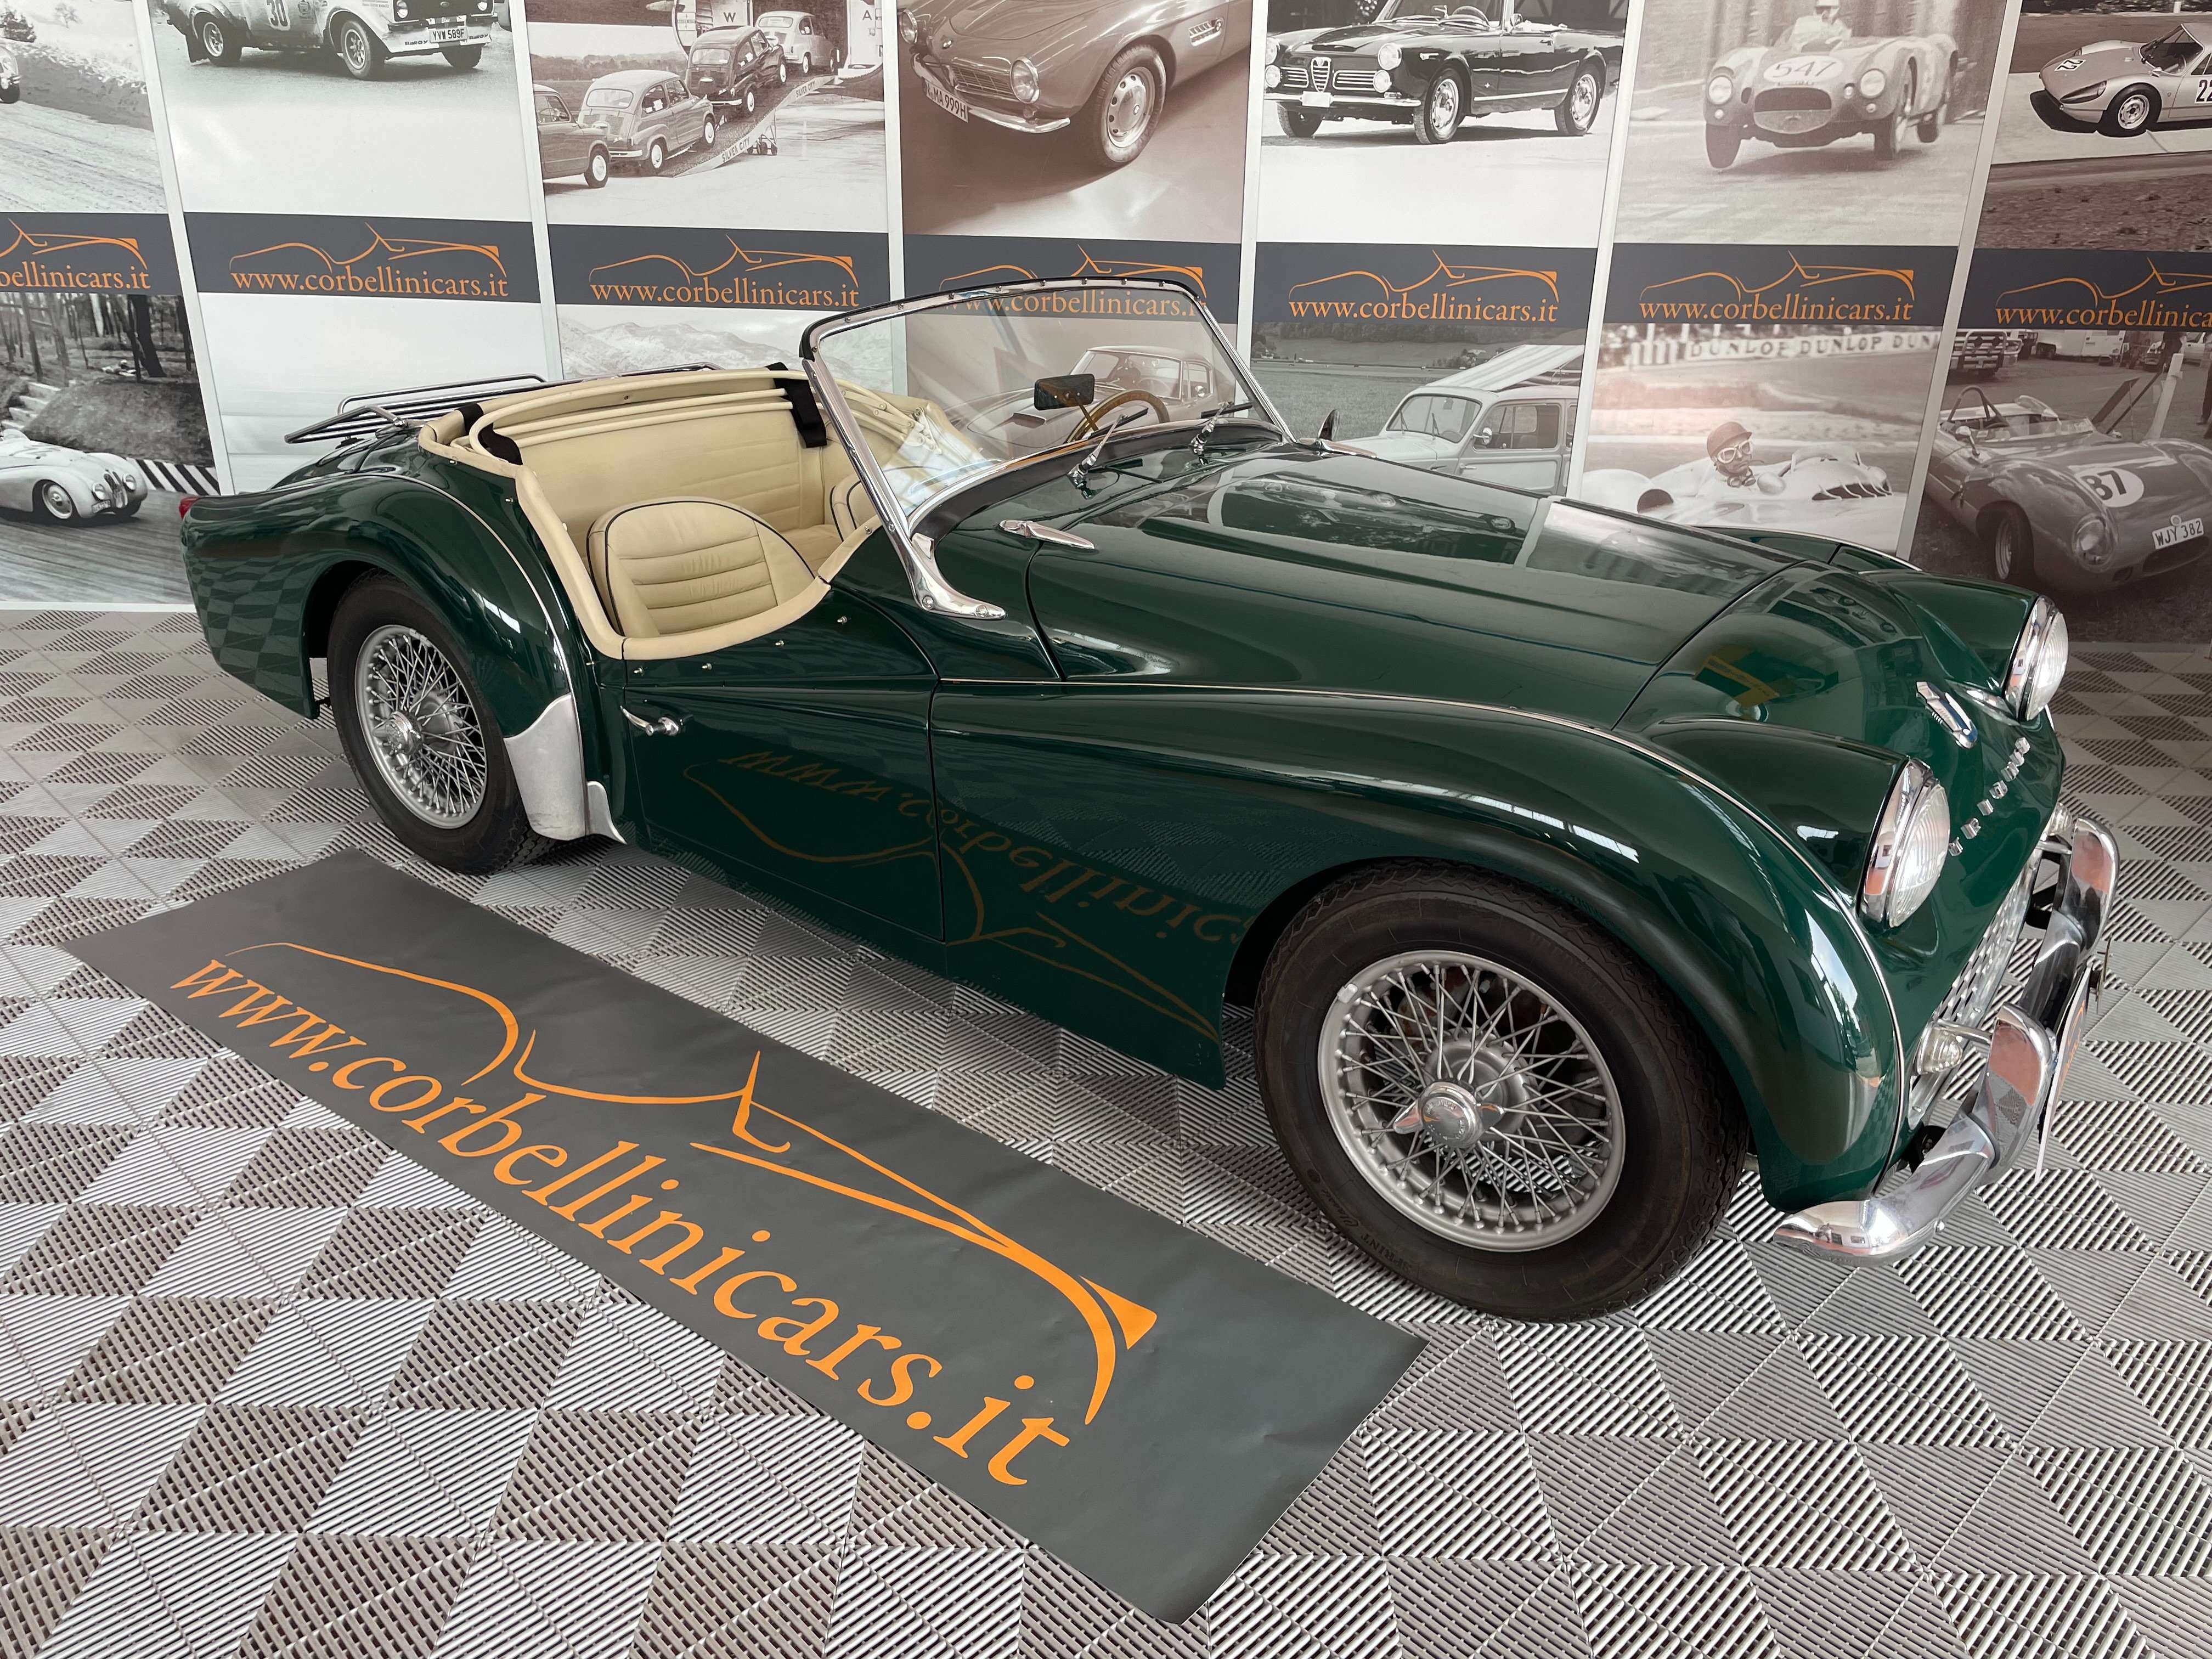 Triumph TR3 Convertible in Green antique / classic in Rivergaro - Piacenza - Pc for € 47,900.-